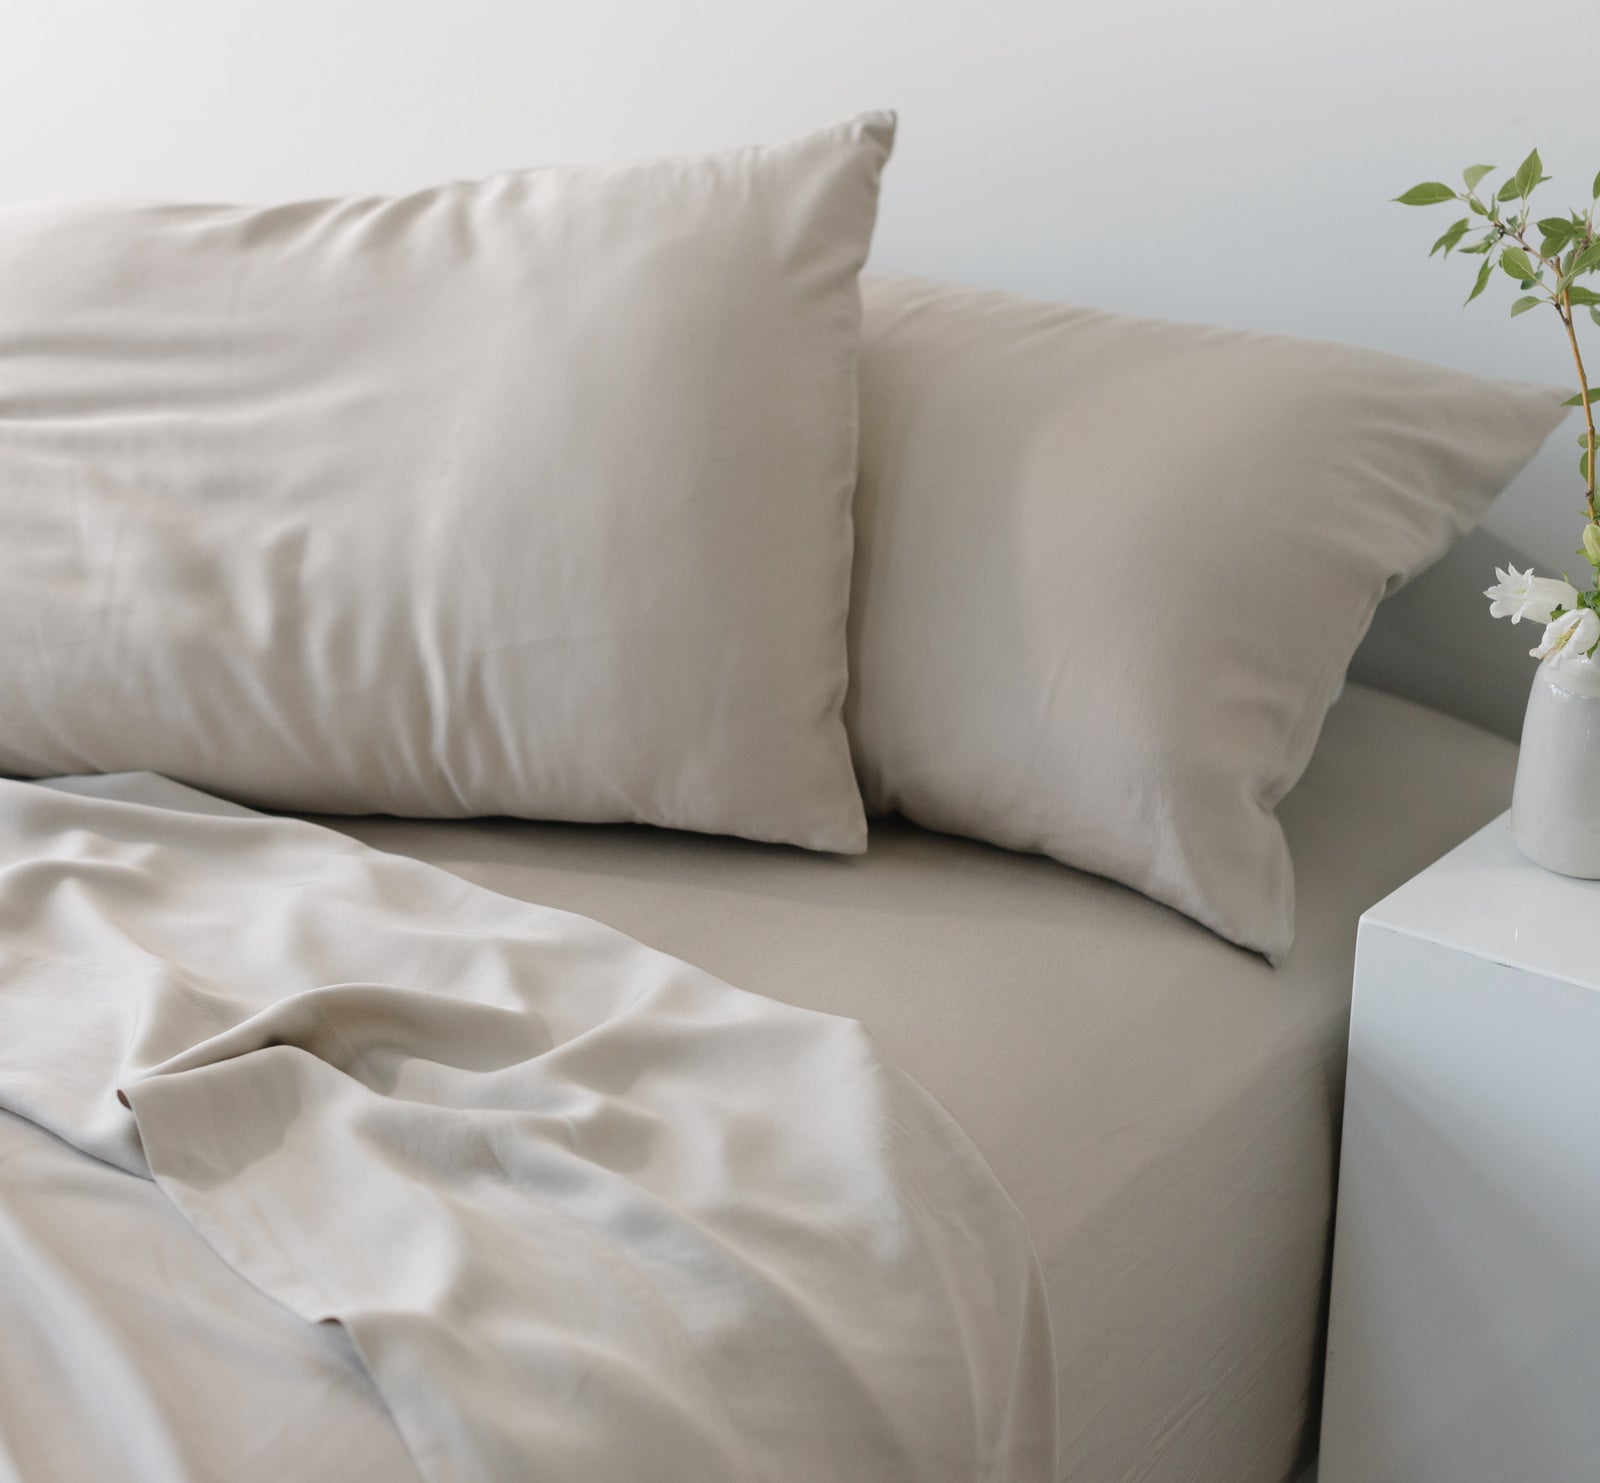 Buy Bed Sheet Clips Duvet Cover Clips Non-Slip Fitted Quilt Sheet Holder -  White Online